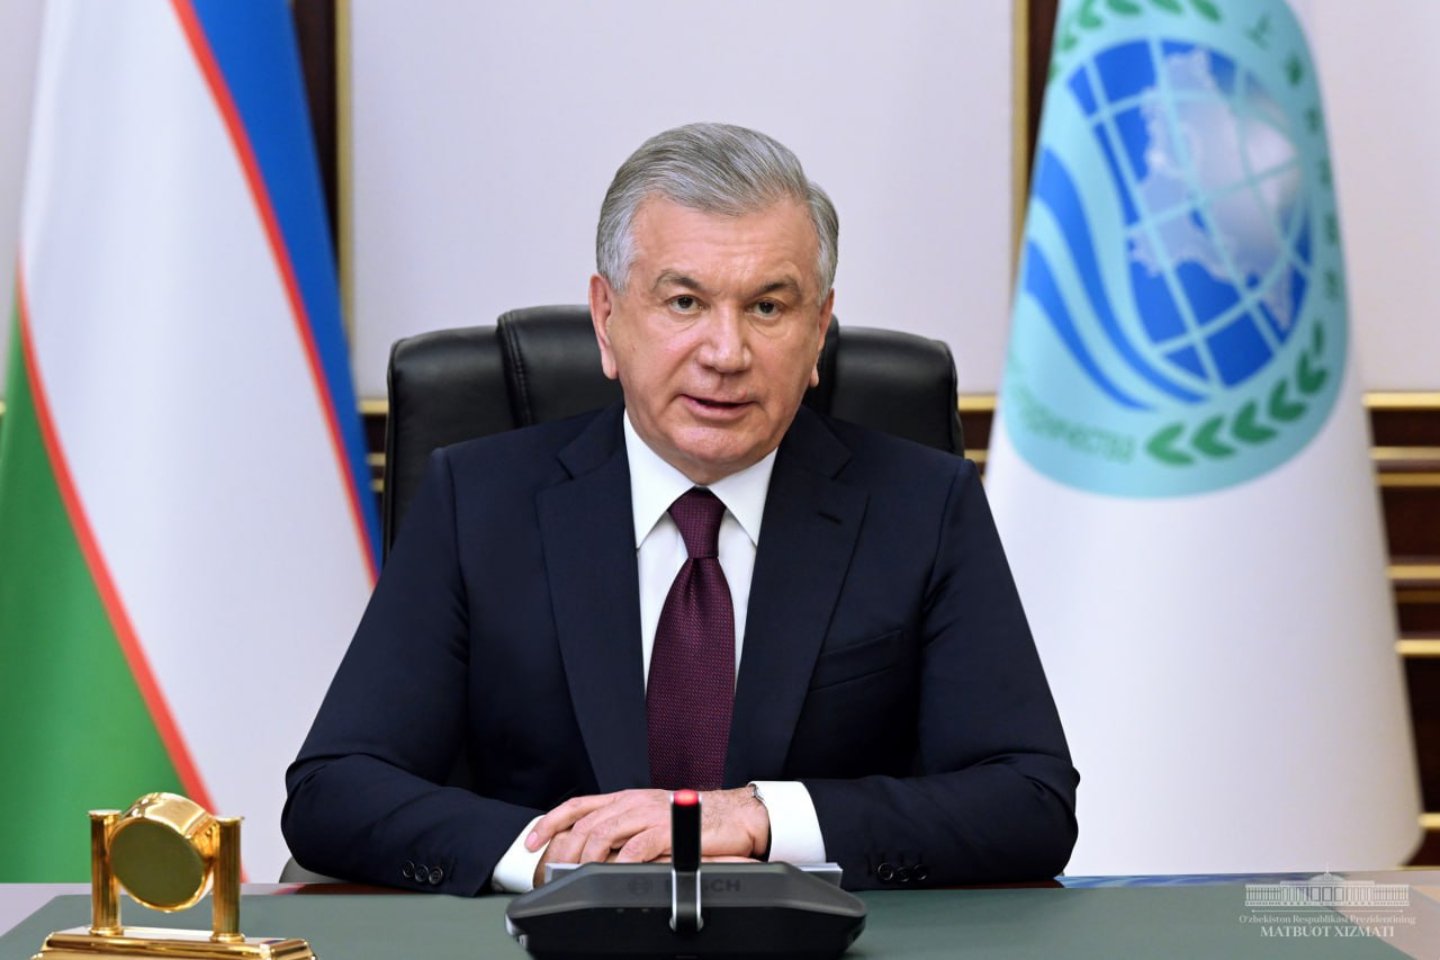 Новости мира / Политика в мире / Президентом Узбекистана переизбран Шавкат Мирзиеев